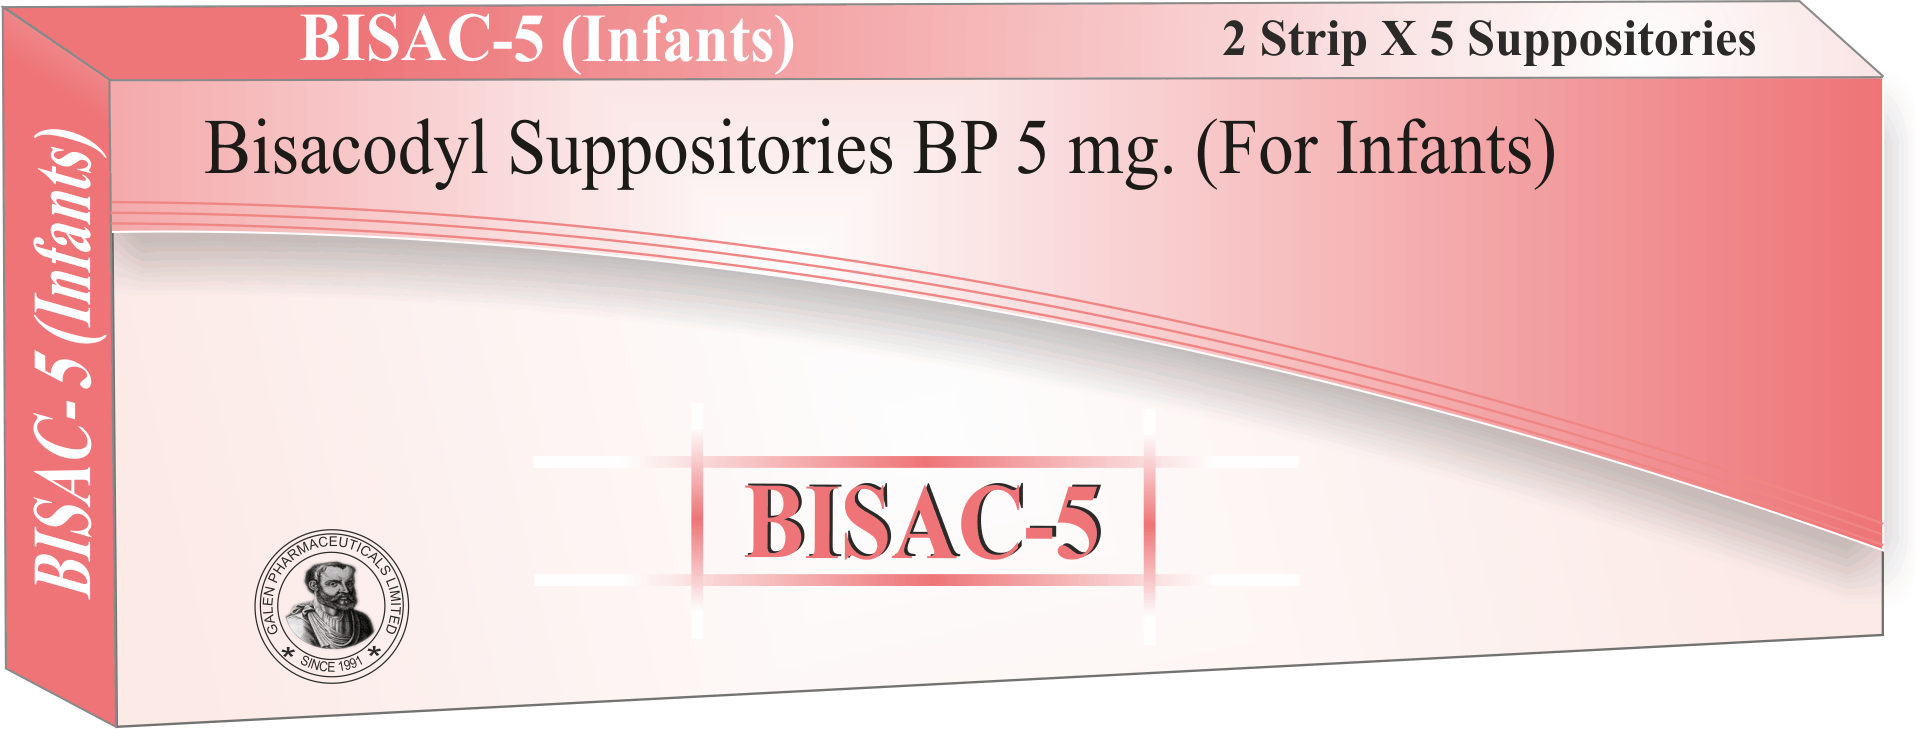 Bisacodyl Suppositories Manufacturer